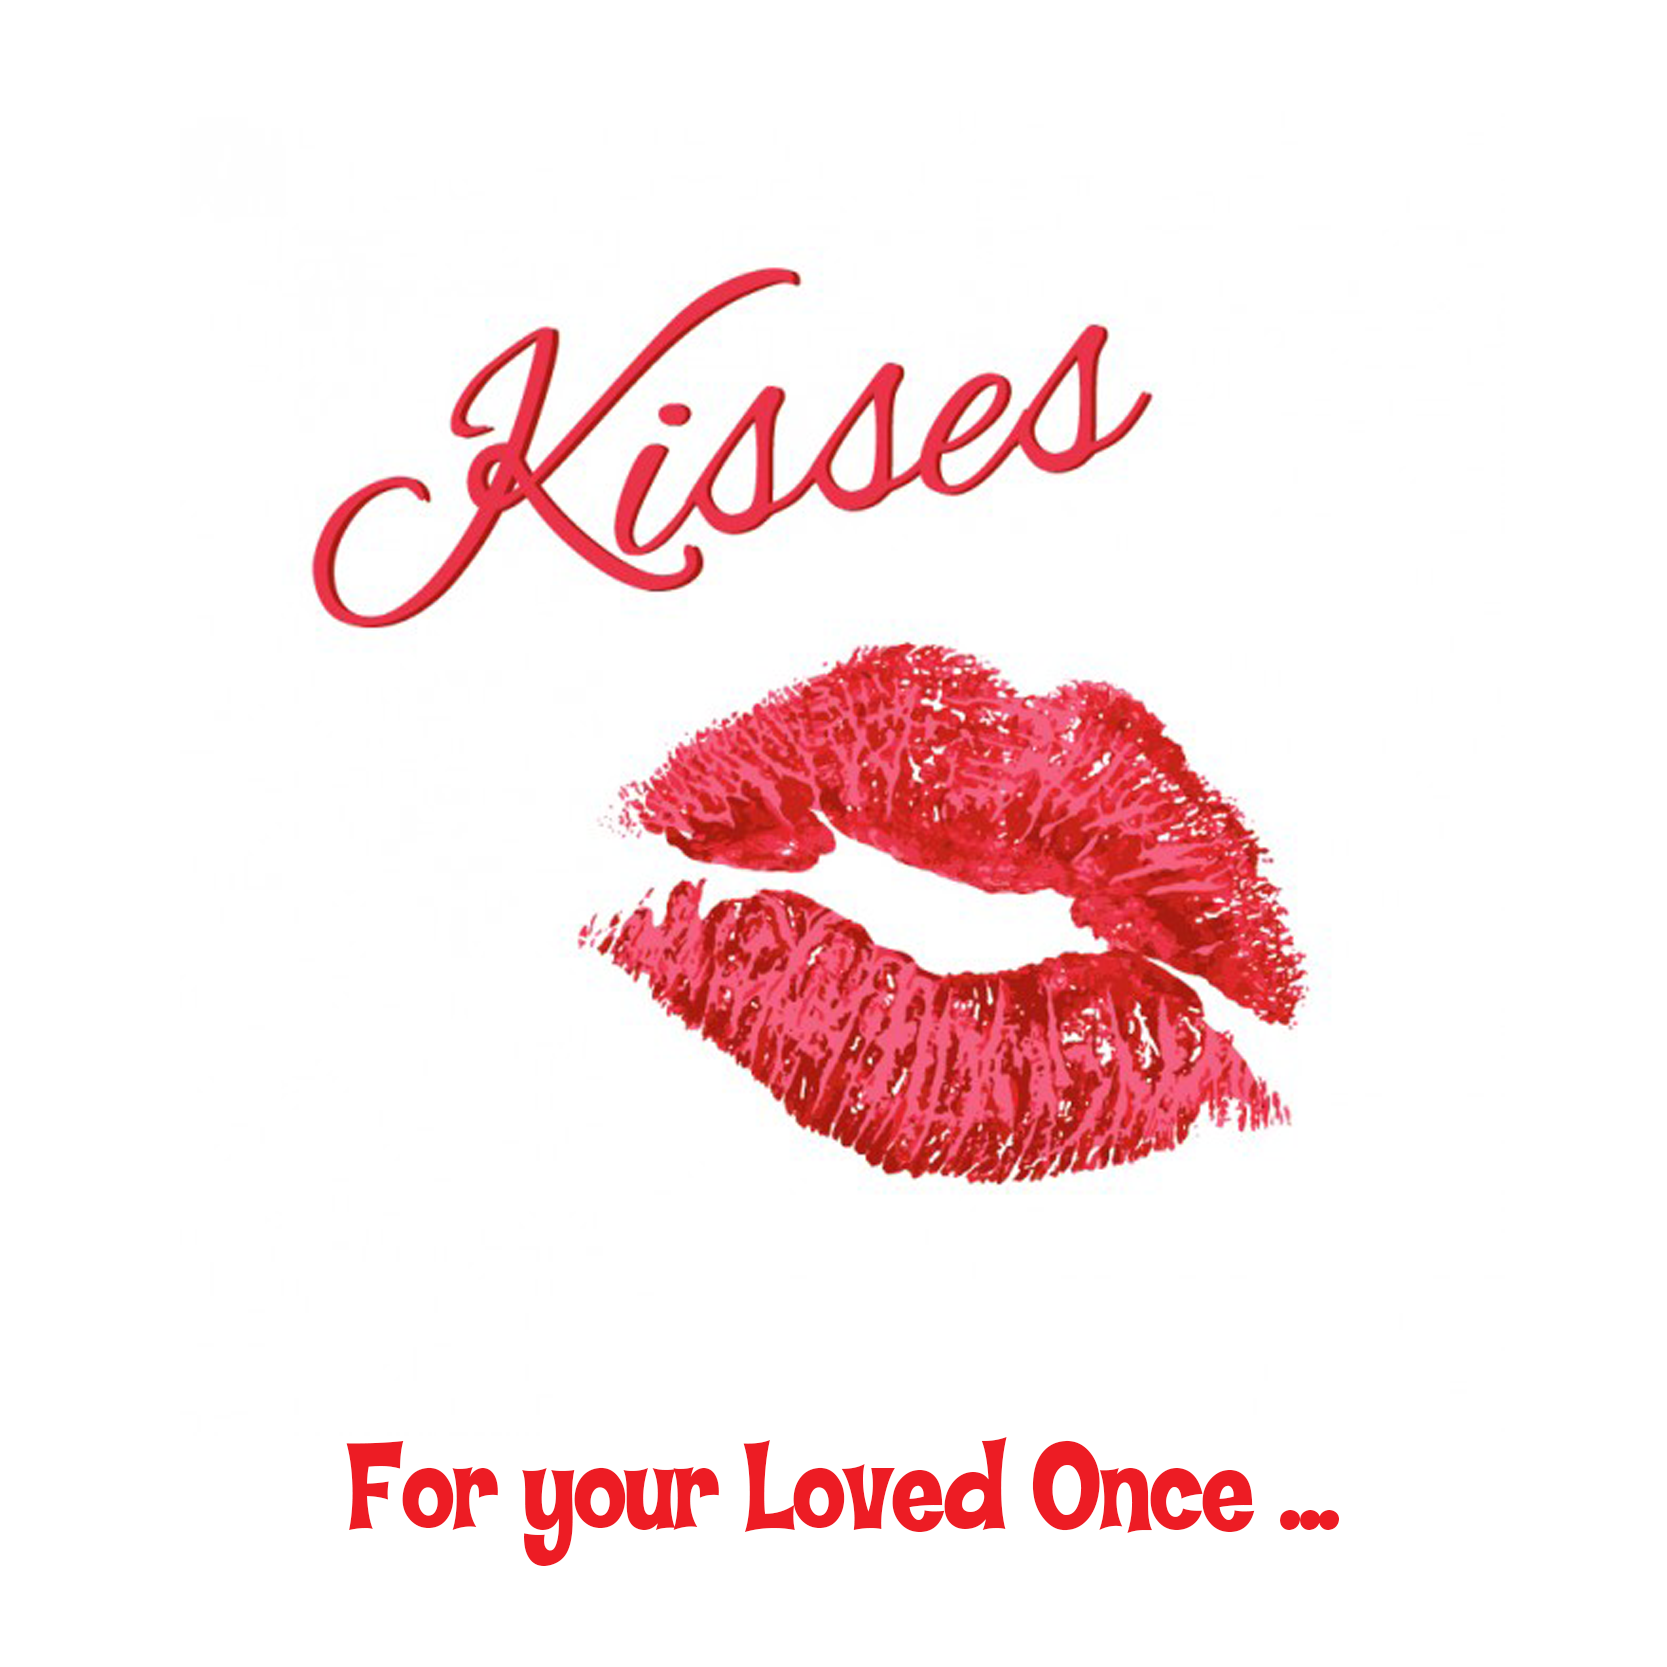 Kiss -pošli to všem, které